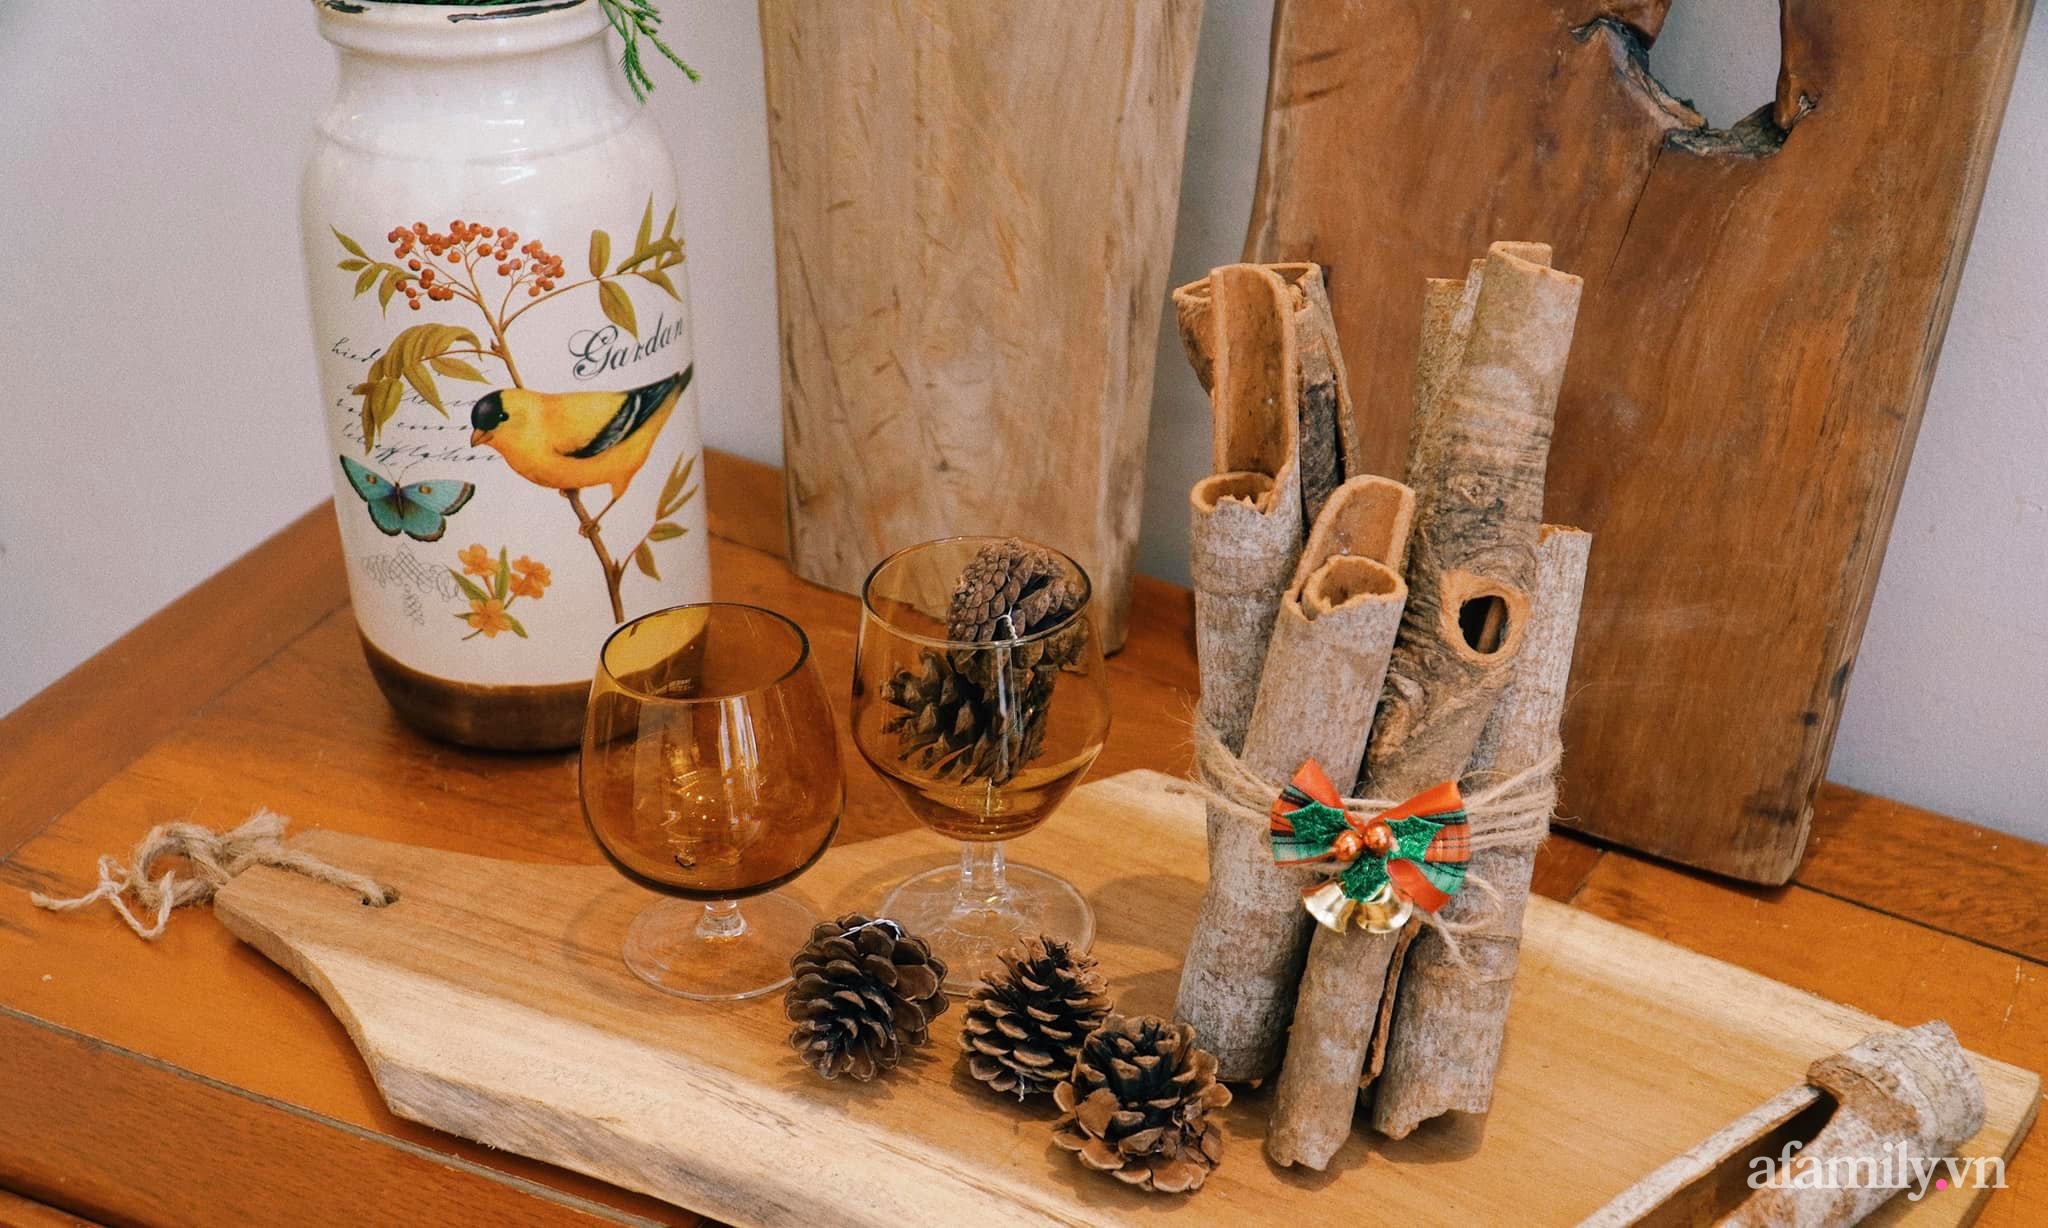 Căn nhà phố Hà Nội dịu dàng hương Giáng sinh nhờ decor bằng nguyên liệu sẵn có trong bếp - Ảnh 6.